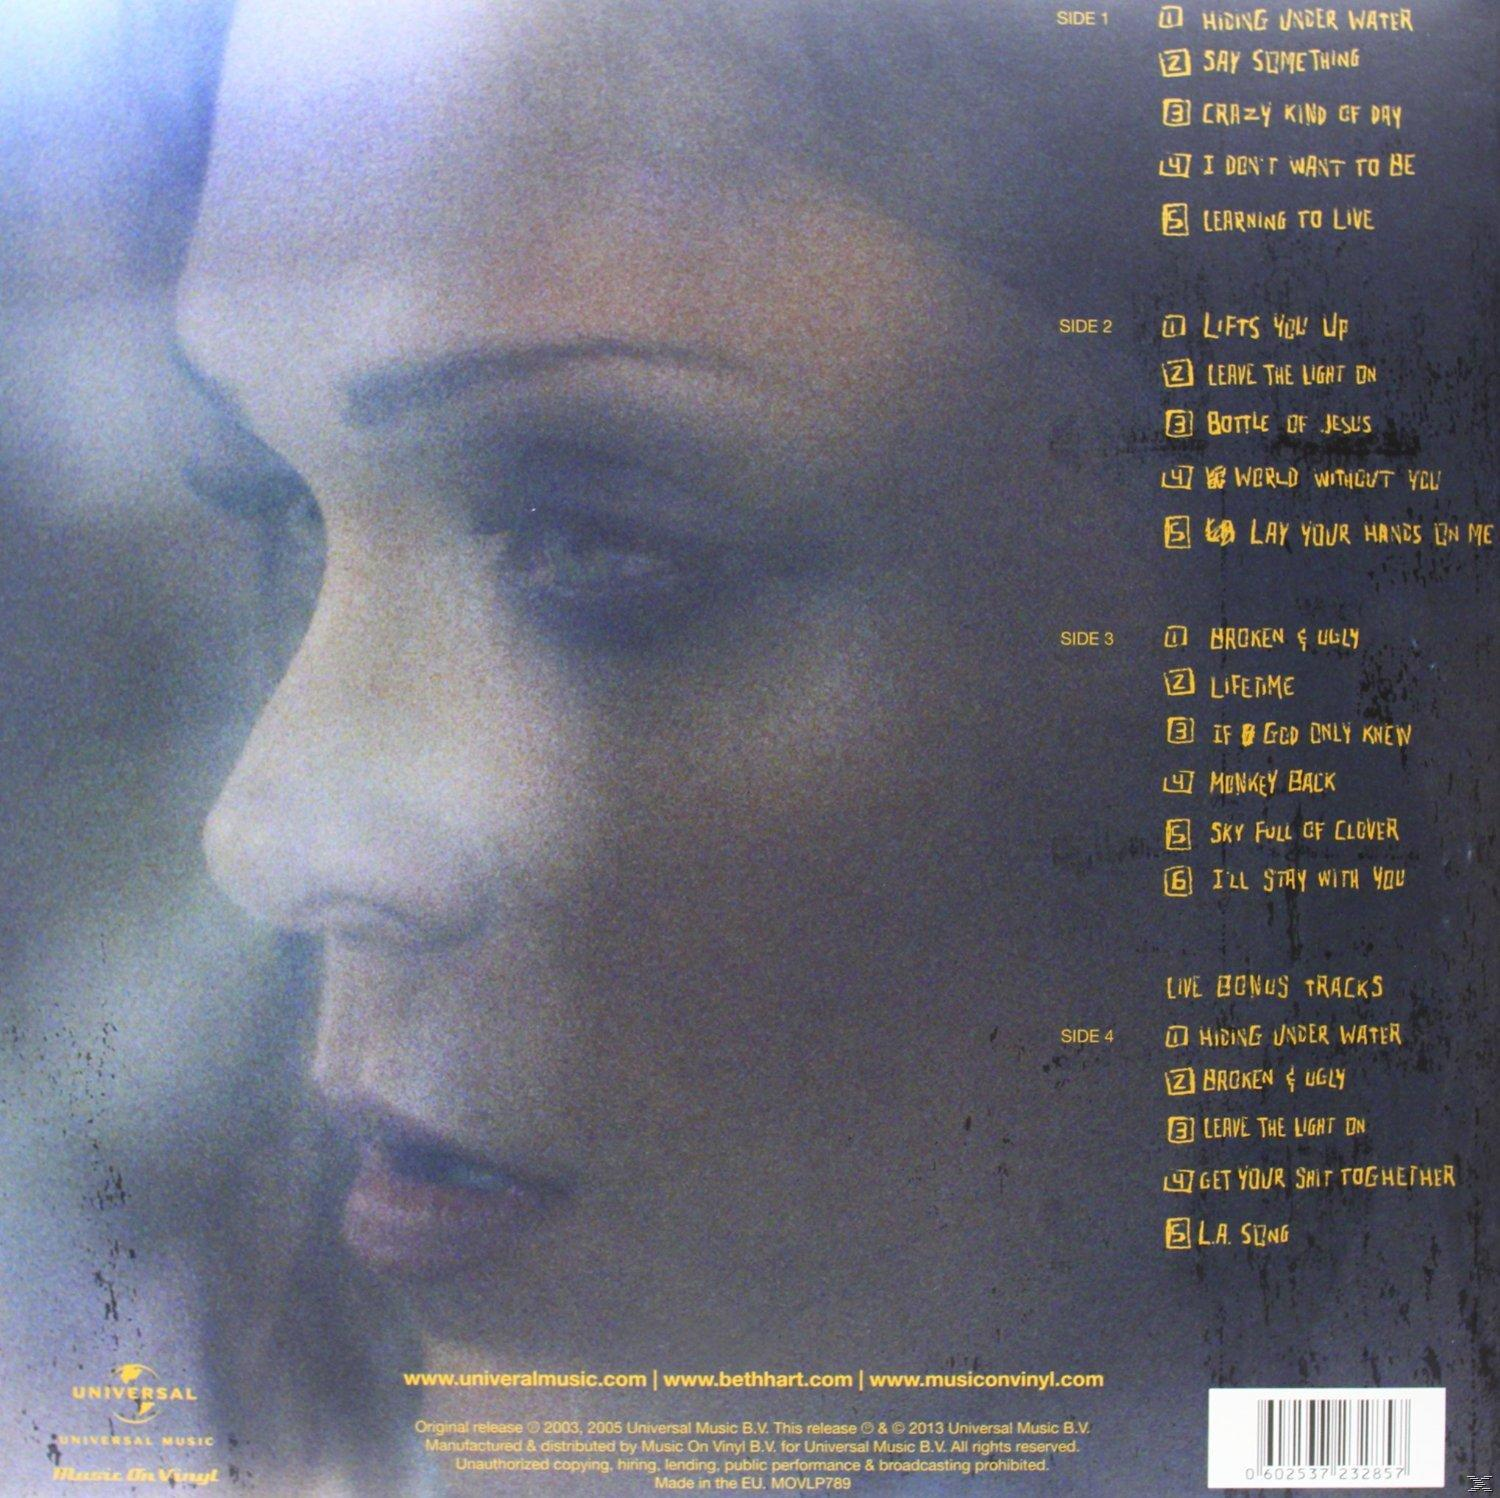 Beth Hart - The On - (Vinyl) Leave Light